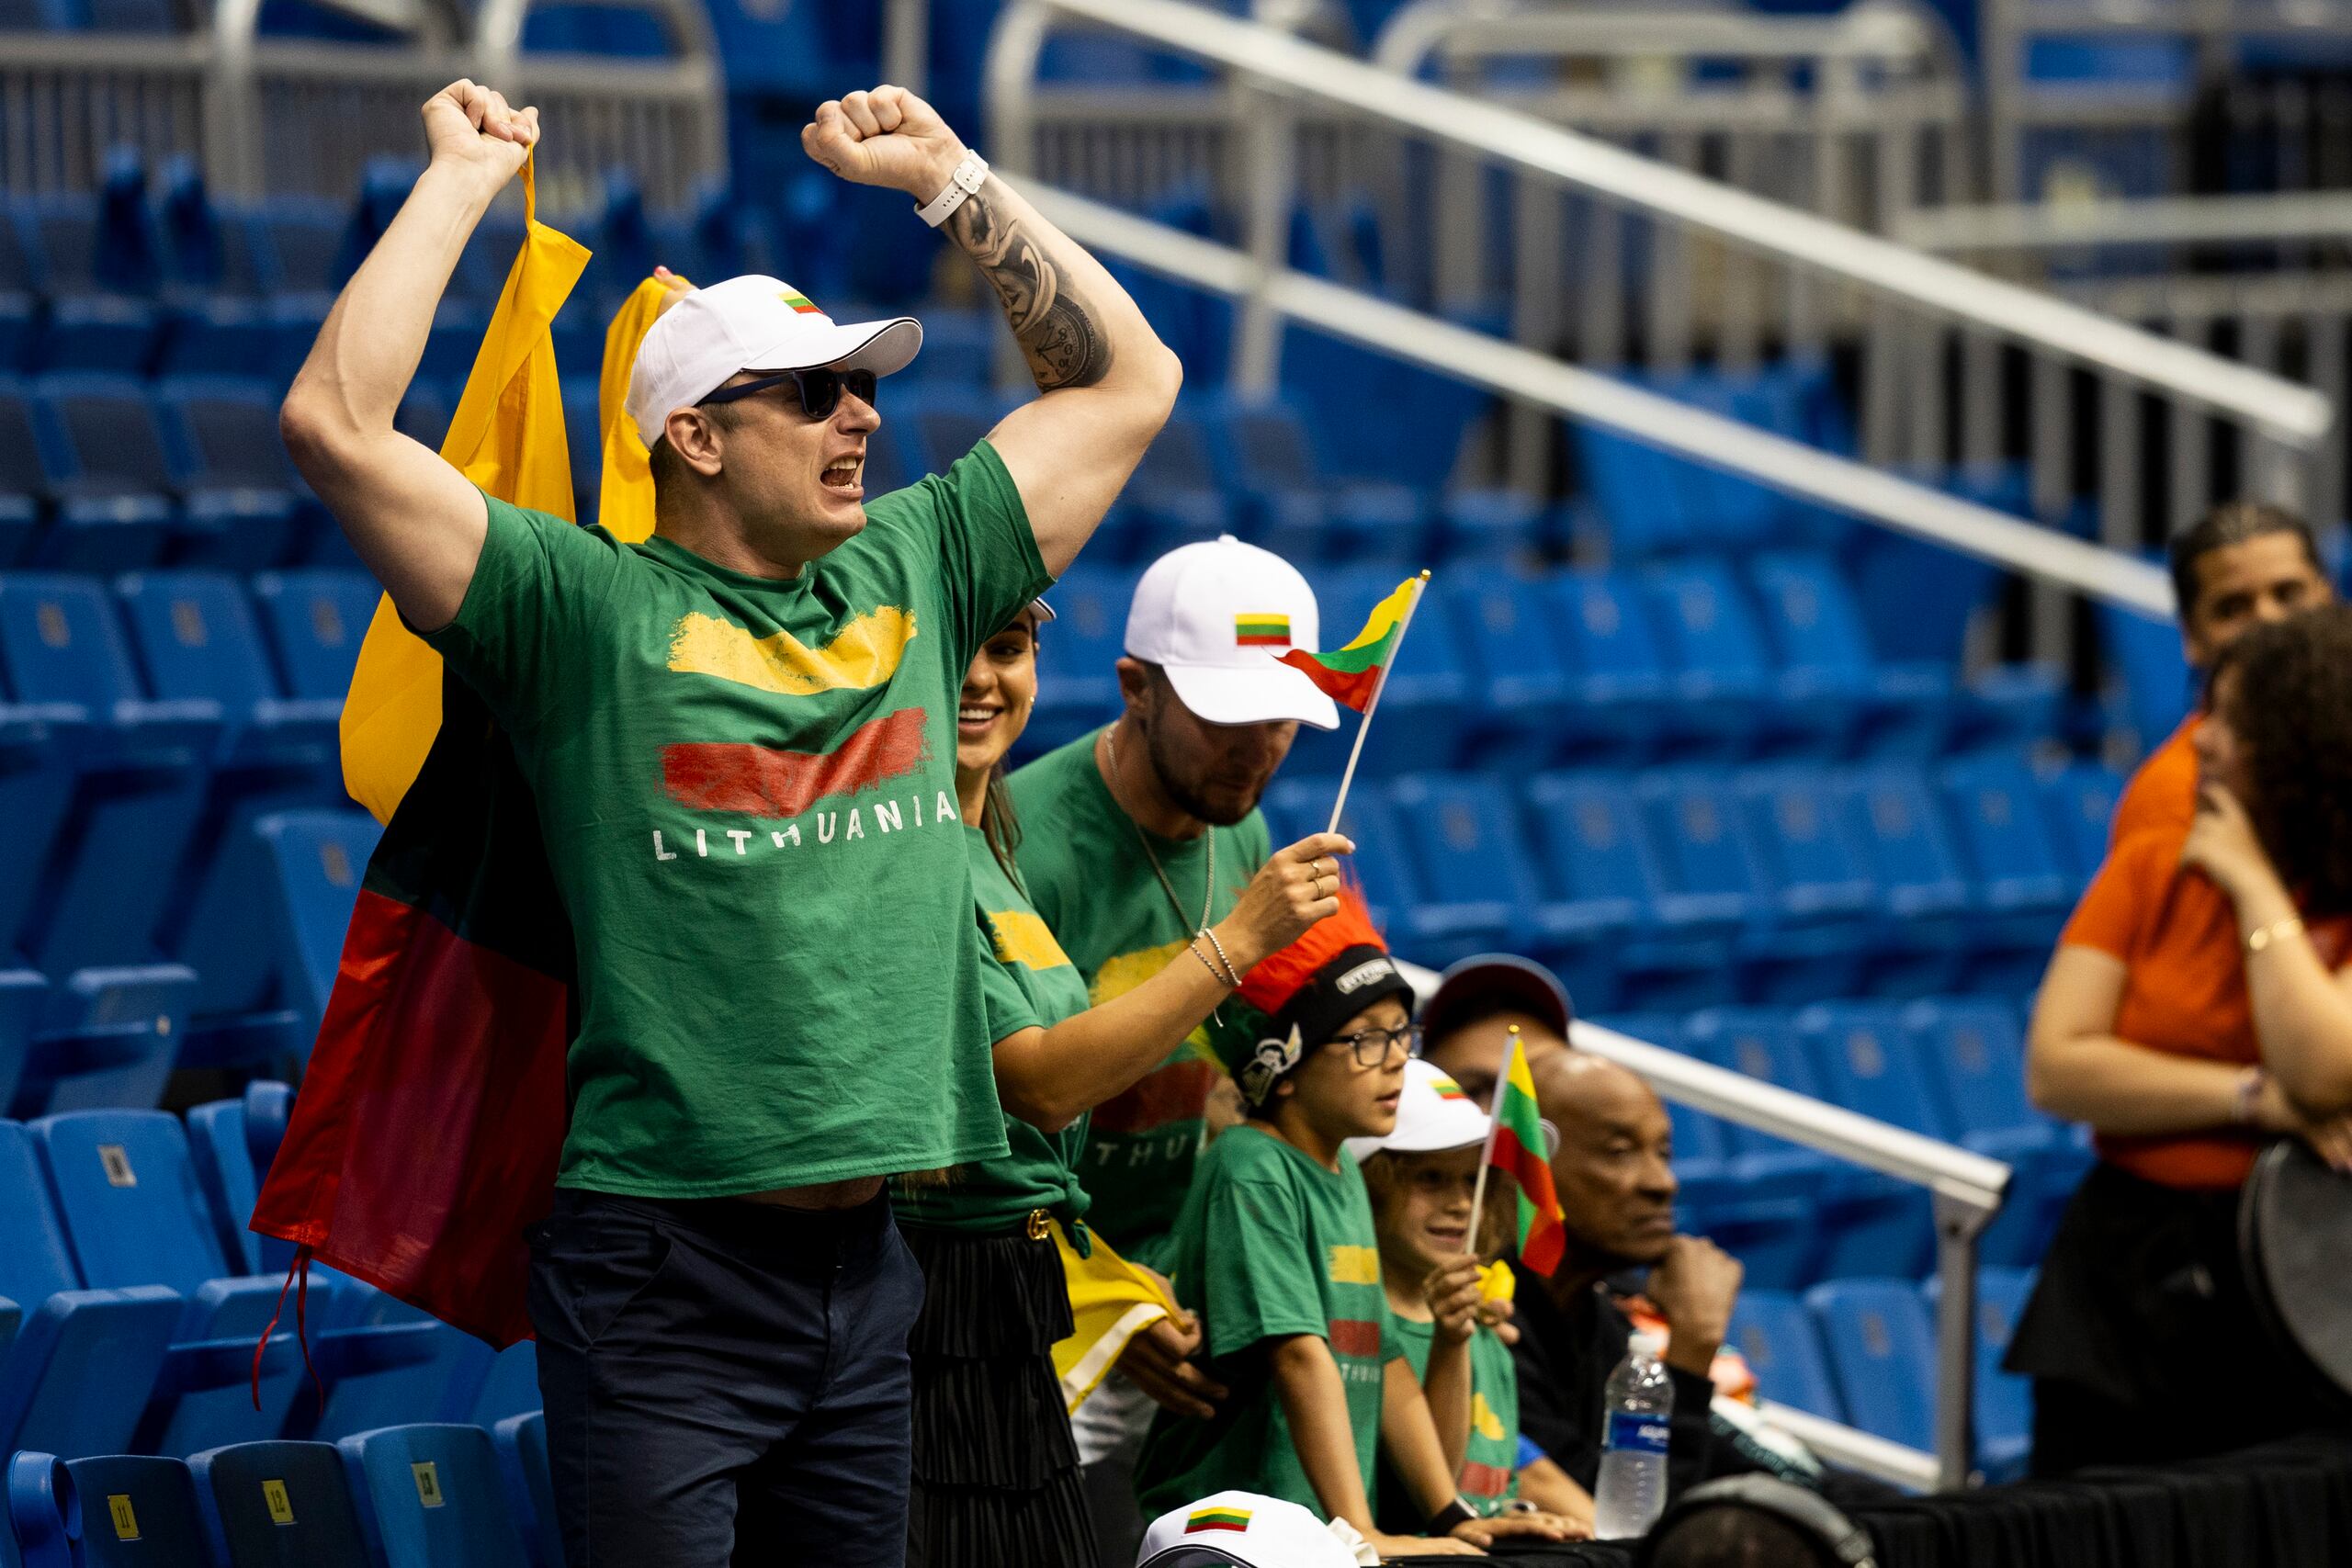 Los seguidores de la selección de Lituania llegaron temprano al Coliseo de Puerto Rico.